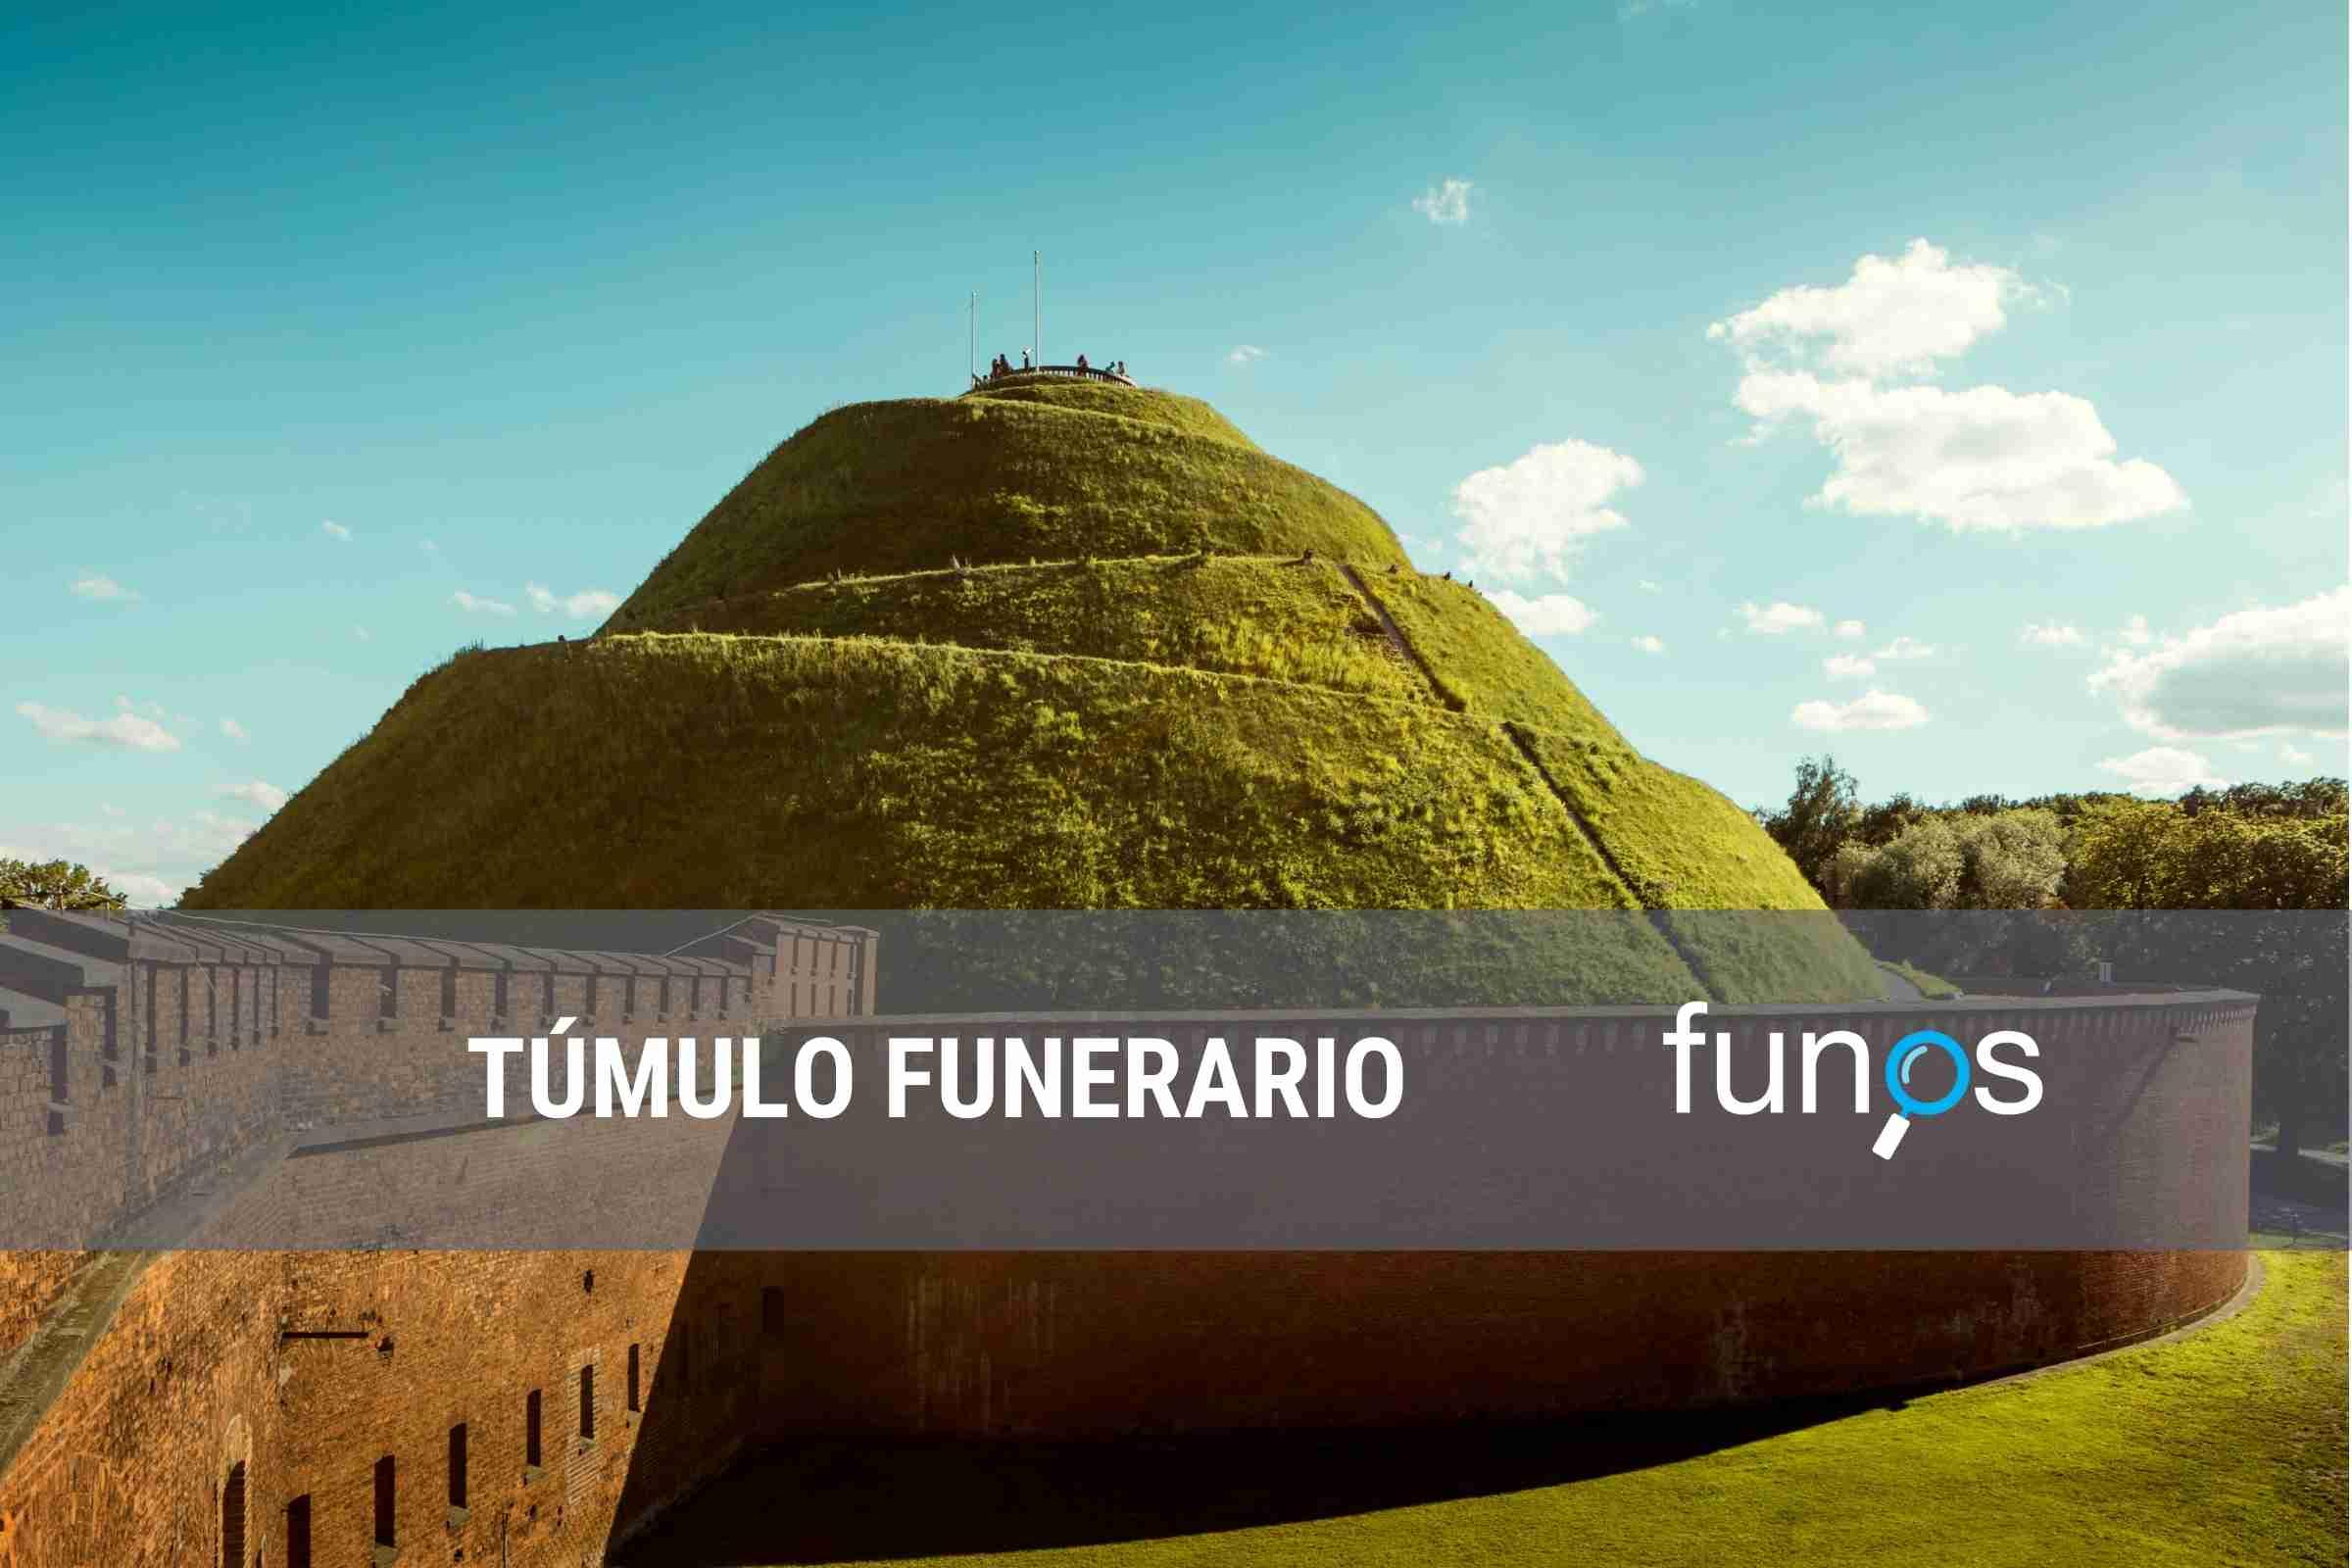 Post sobre Qué son los túmulos funerarios en Funos